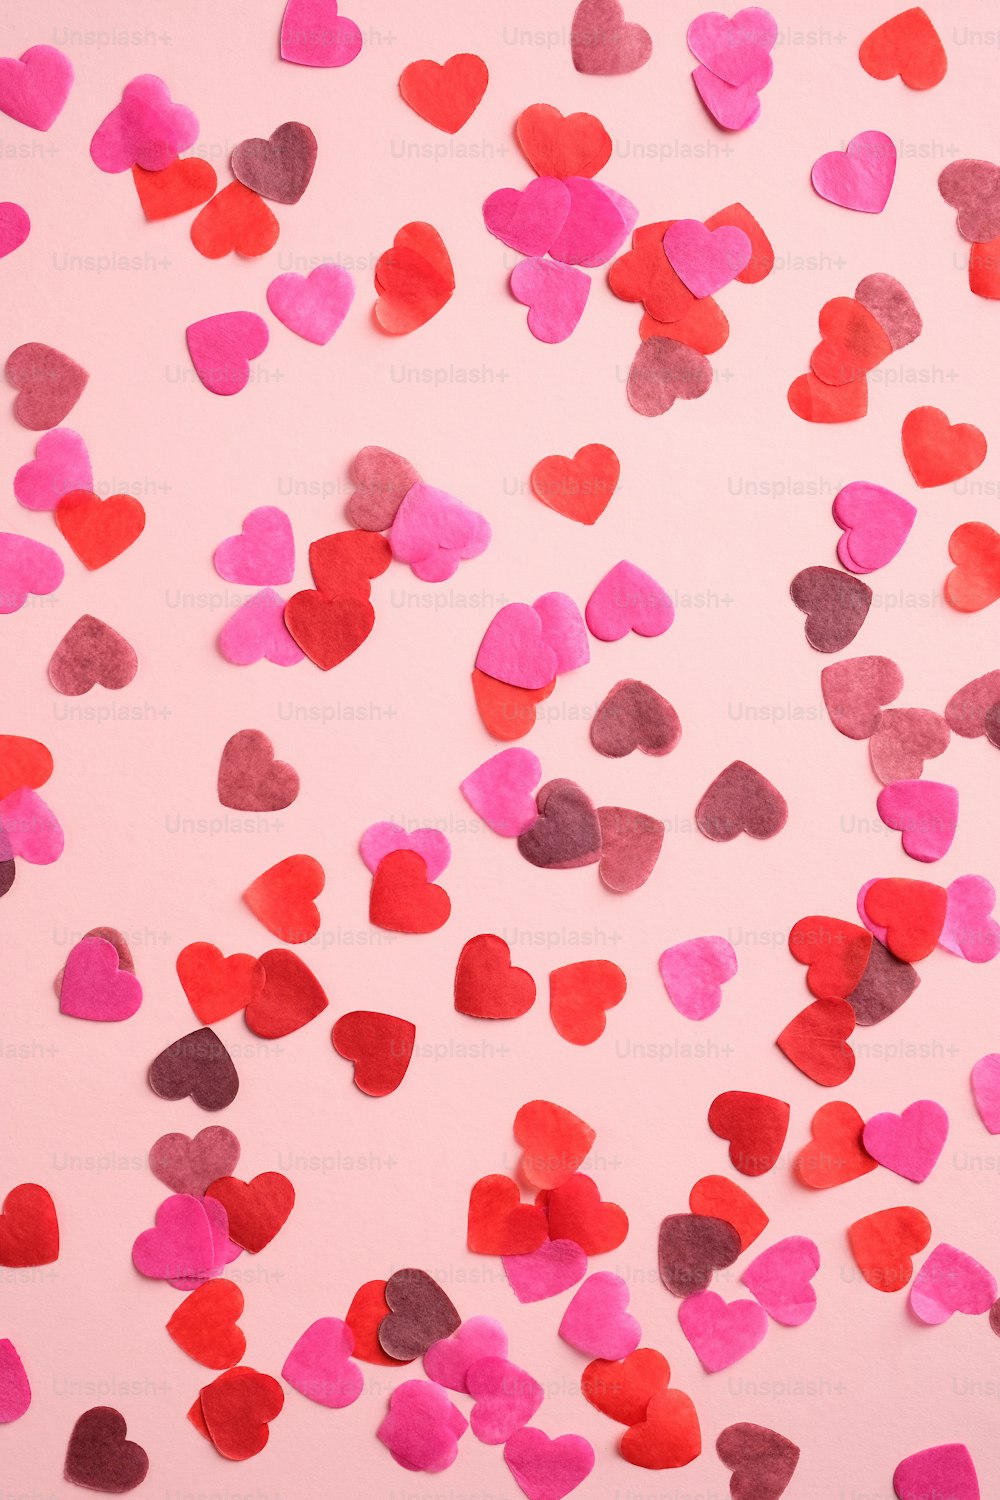 Motif de la Saint-Valentin composé de coeurs sur fond rose. Convient pour les bannières verticales, les dépliants, les brochures, les histoires sur les médias sociaux